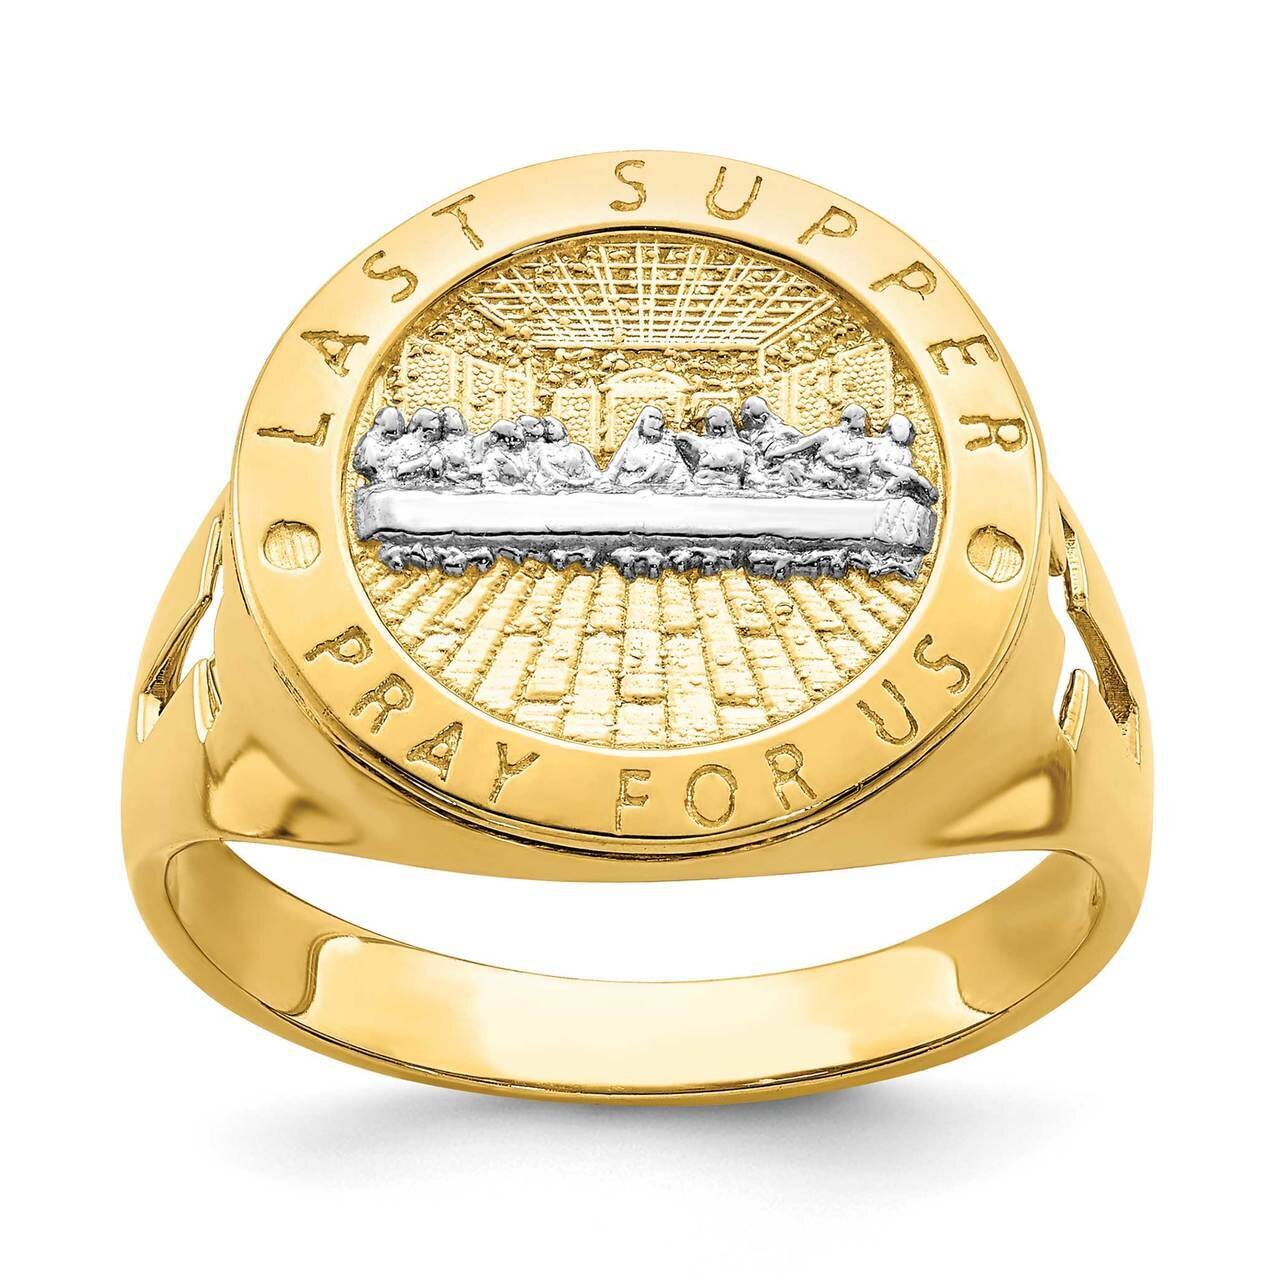 The Last Super Men's Ring 14k Gold Rhodium R668